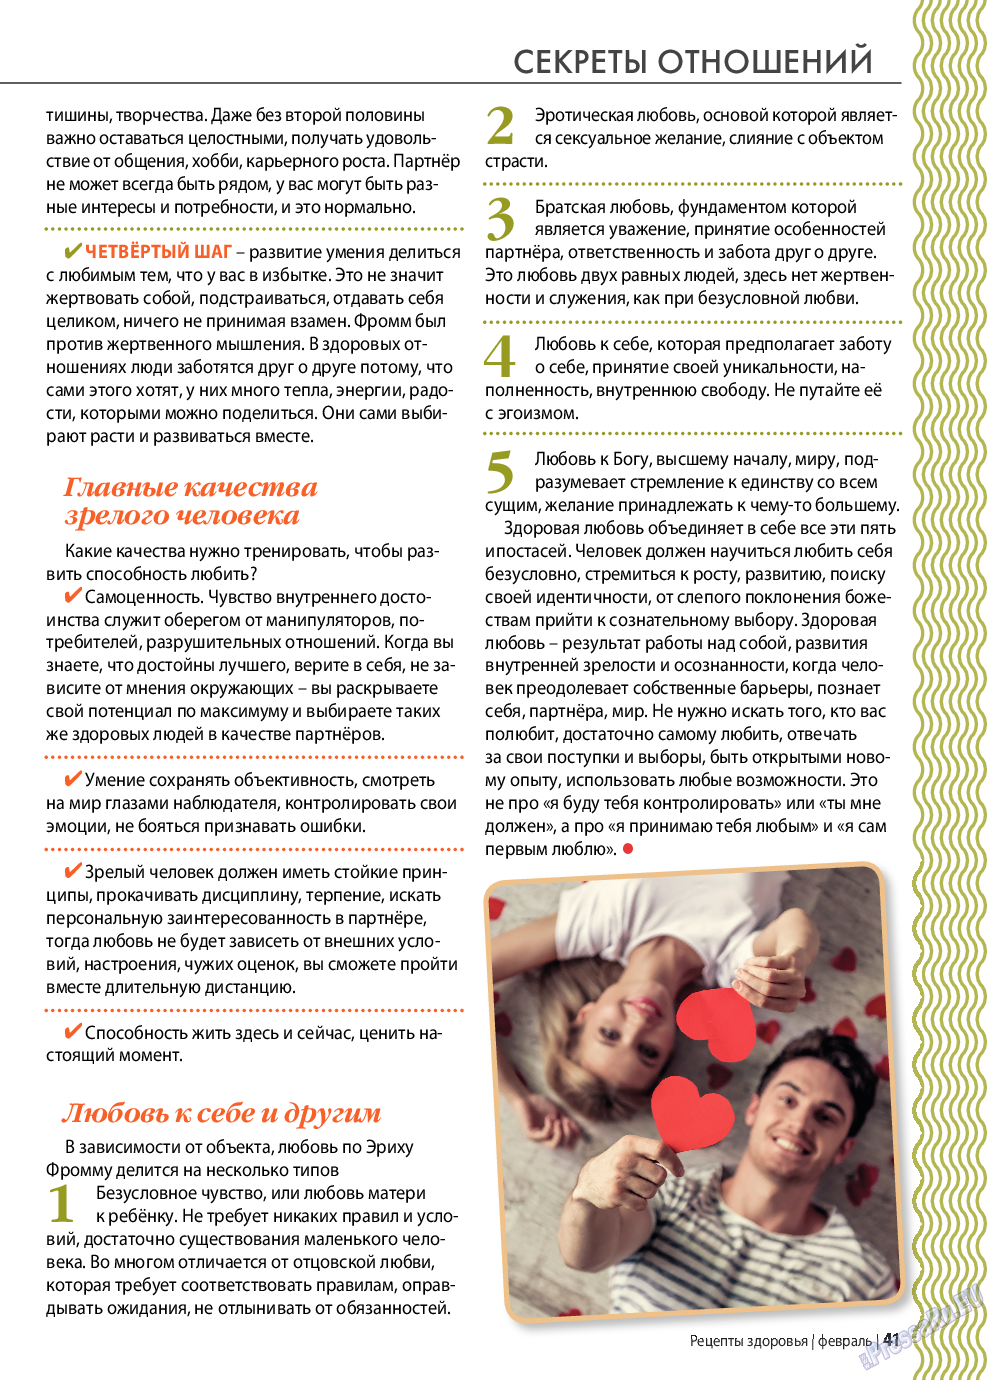 Рецепты здоровья, журнал. 2022 №153 стр.41